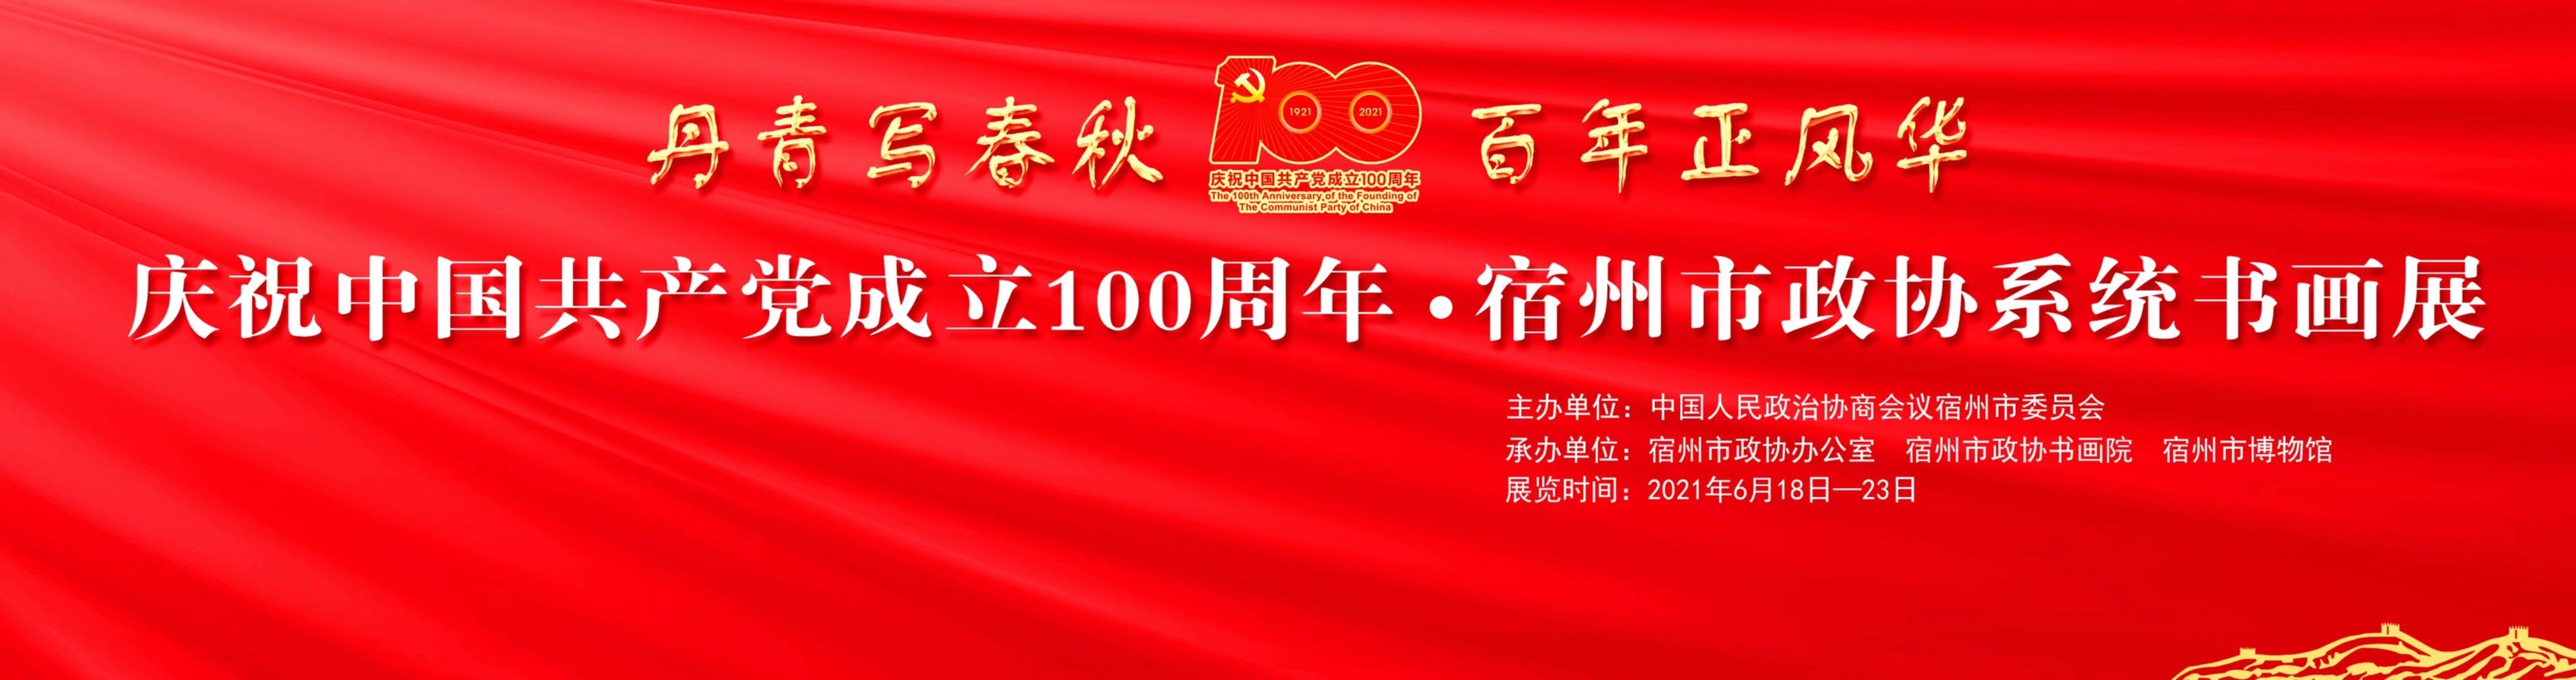 《丹青写春秋 百年正风华—庆祝中国共产党成立100周年宿州市政协系统书画展》明日开展